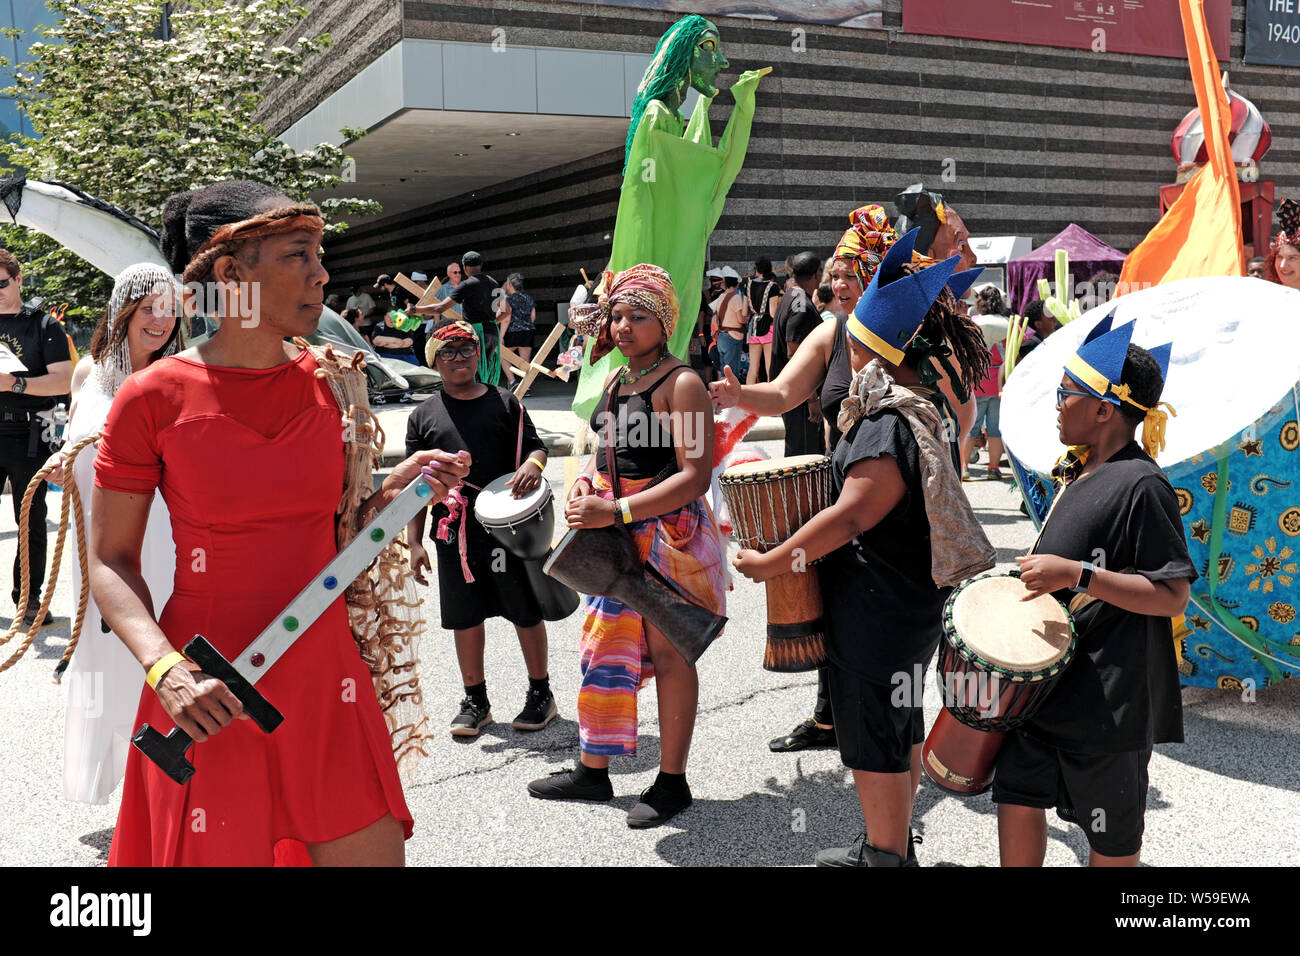 Die multikulturelle jährliche Parade The Circle Veranstaltung in Cleveland, Ohio, USA ist ein wichtiges Ereignis, das Kunst, Gemeinschaft und Leben feiert. Stockfoto